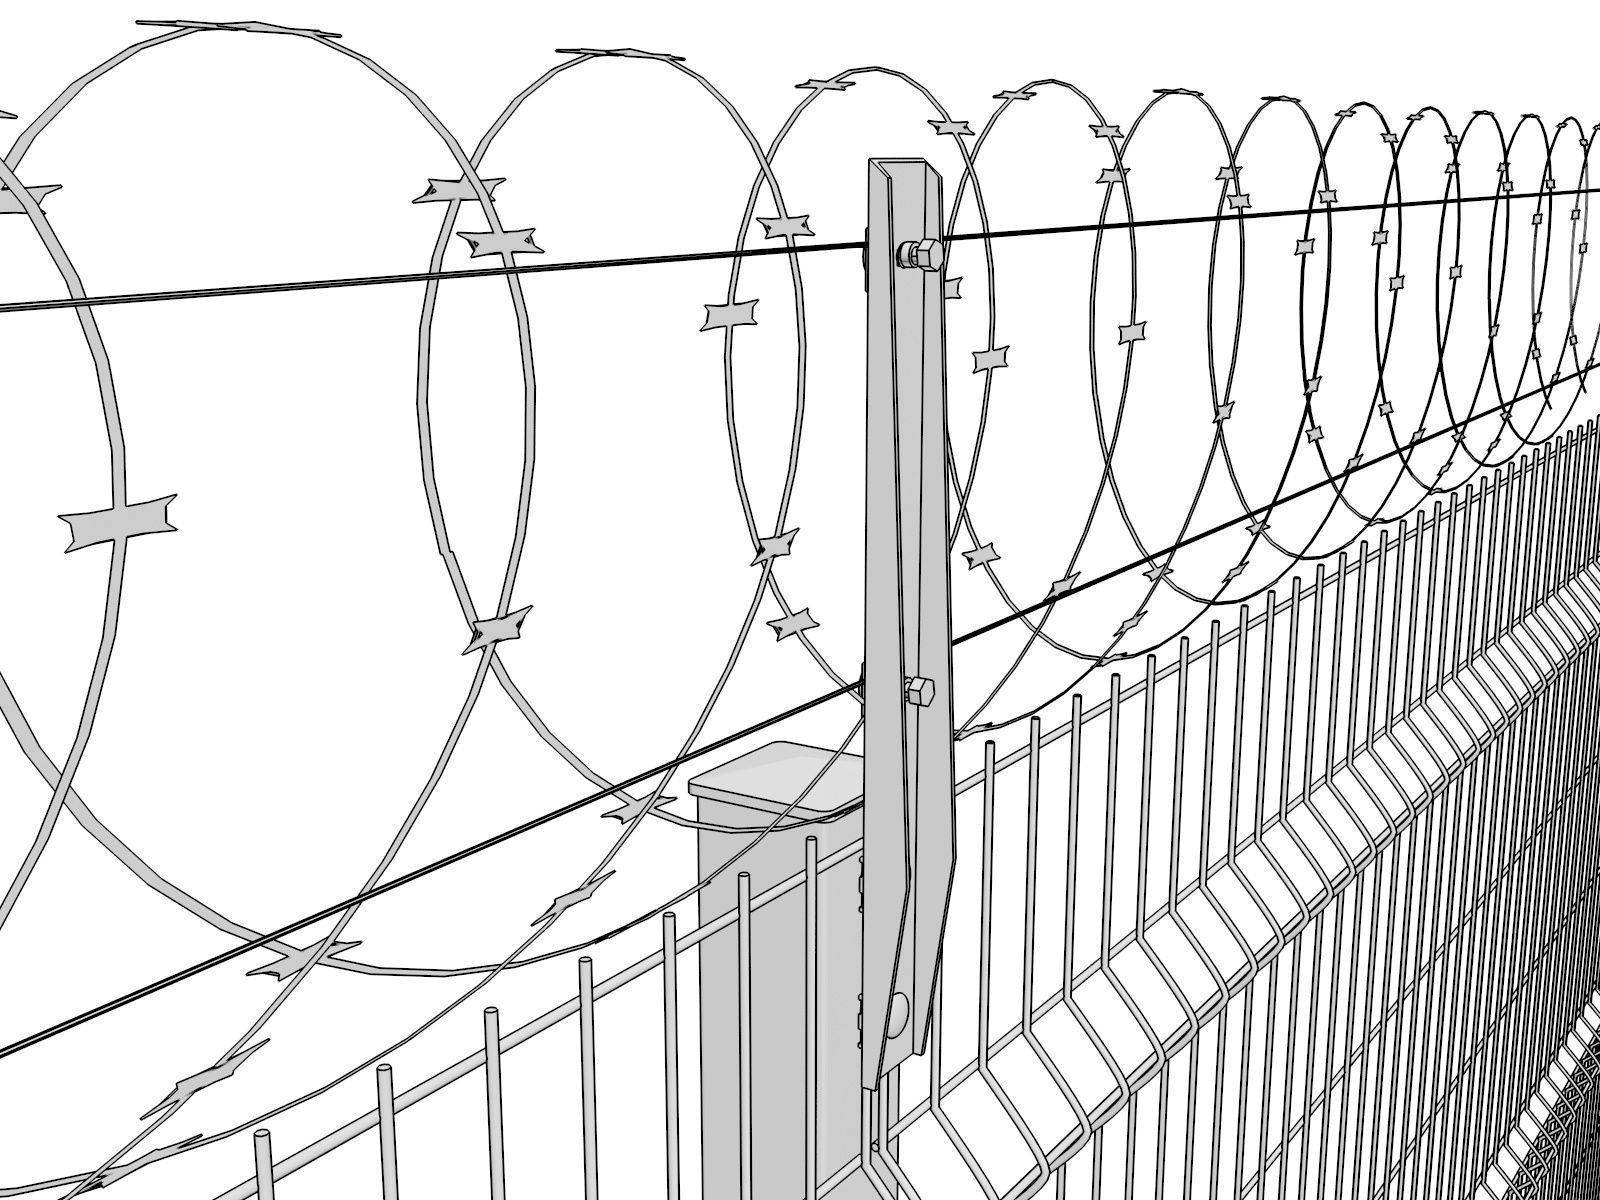 Забор из колючей проволоки: установка и виды монтажа.